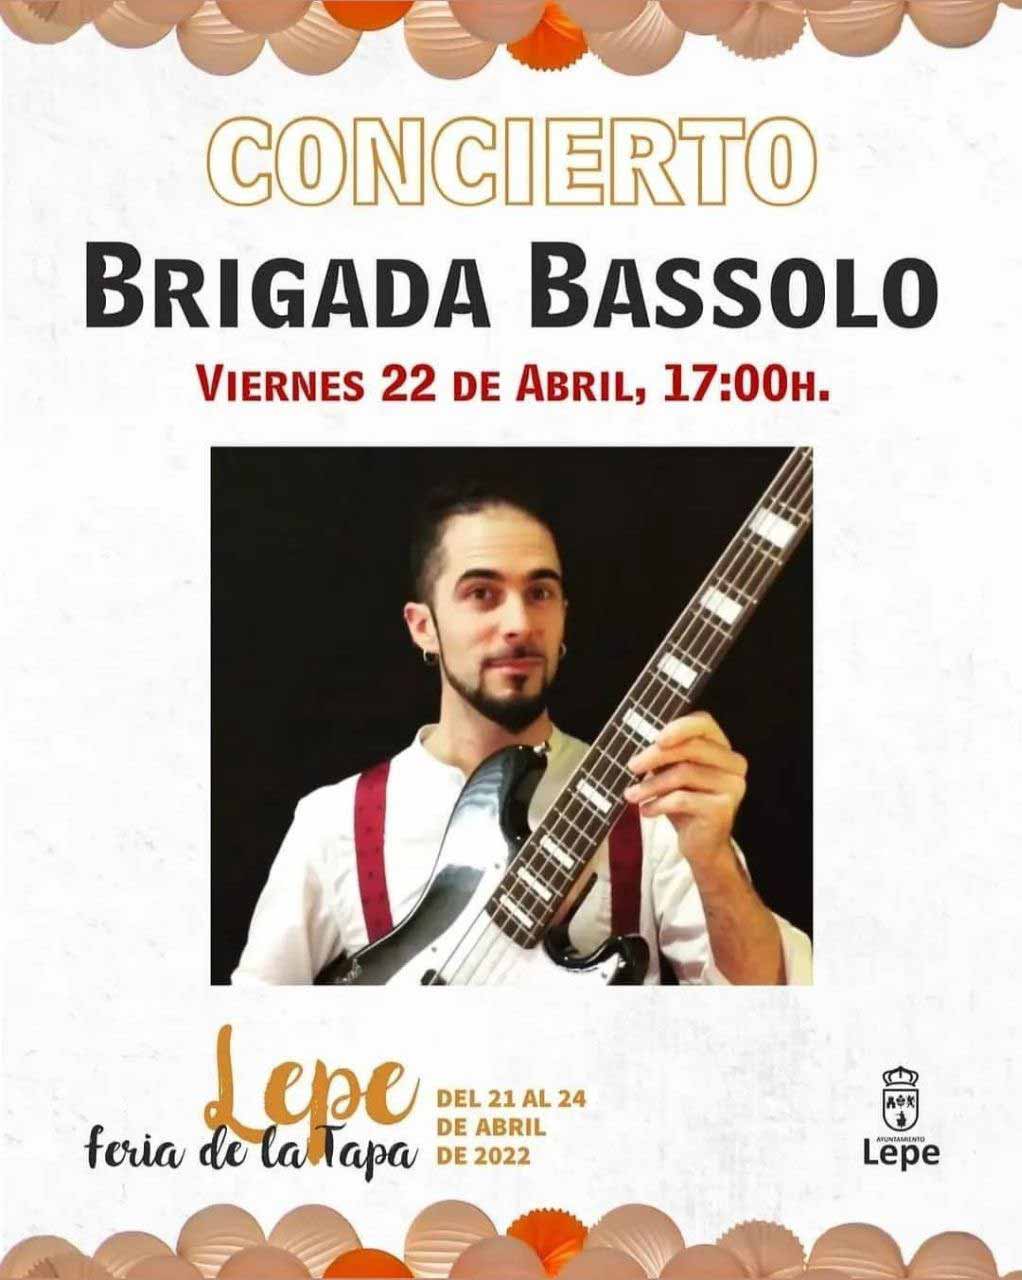 Brigada bassolo en concierto 22 de abril feria de la tapa Lepe 2022